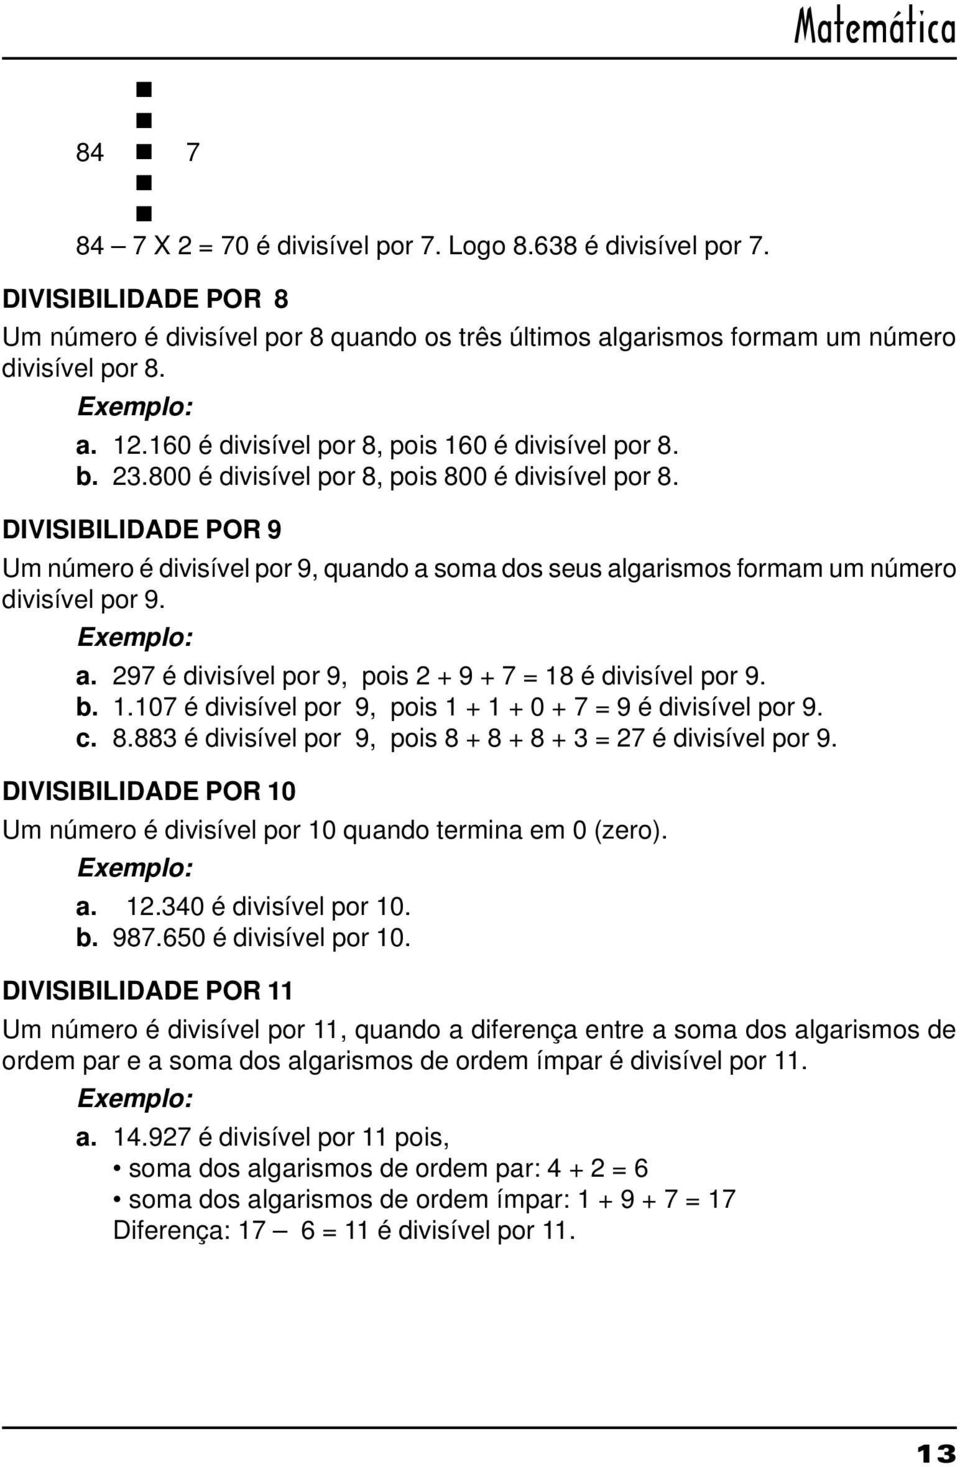 DIVISIBILIDADE POR 9 Um número é divisível por 9, quando a soma dos seus algarismos formam um número divisível por 9. Exemplo: a. 297 é divisível por 9, pois 2 + 9 + 7 = 18